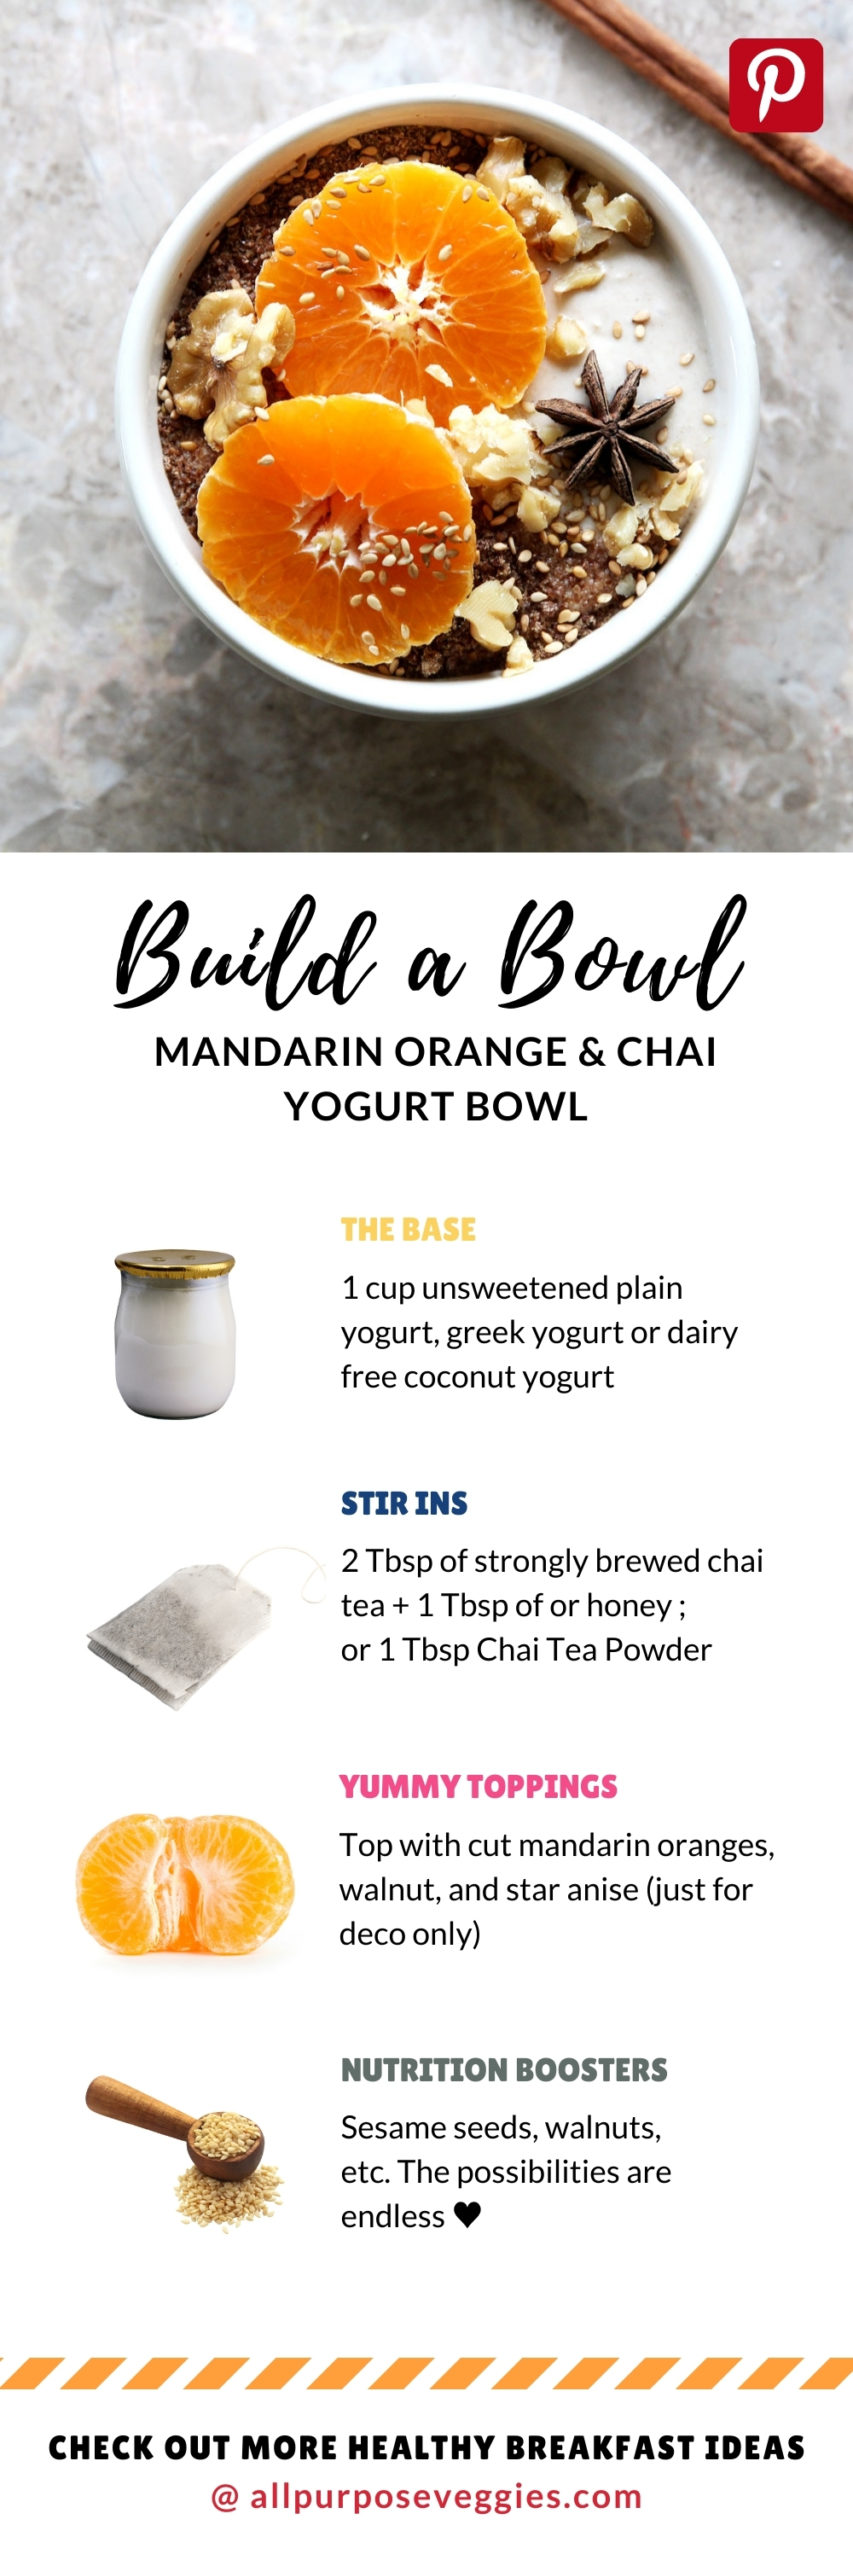 Mandarin Orange & Chai Yogurt Bowl